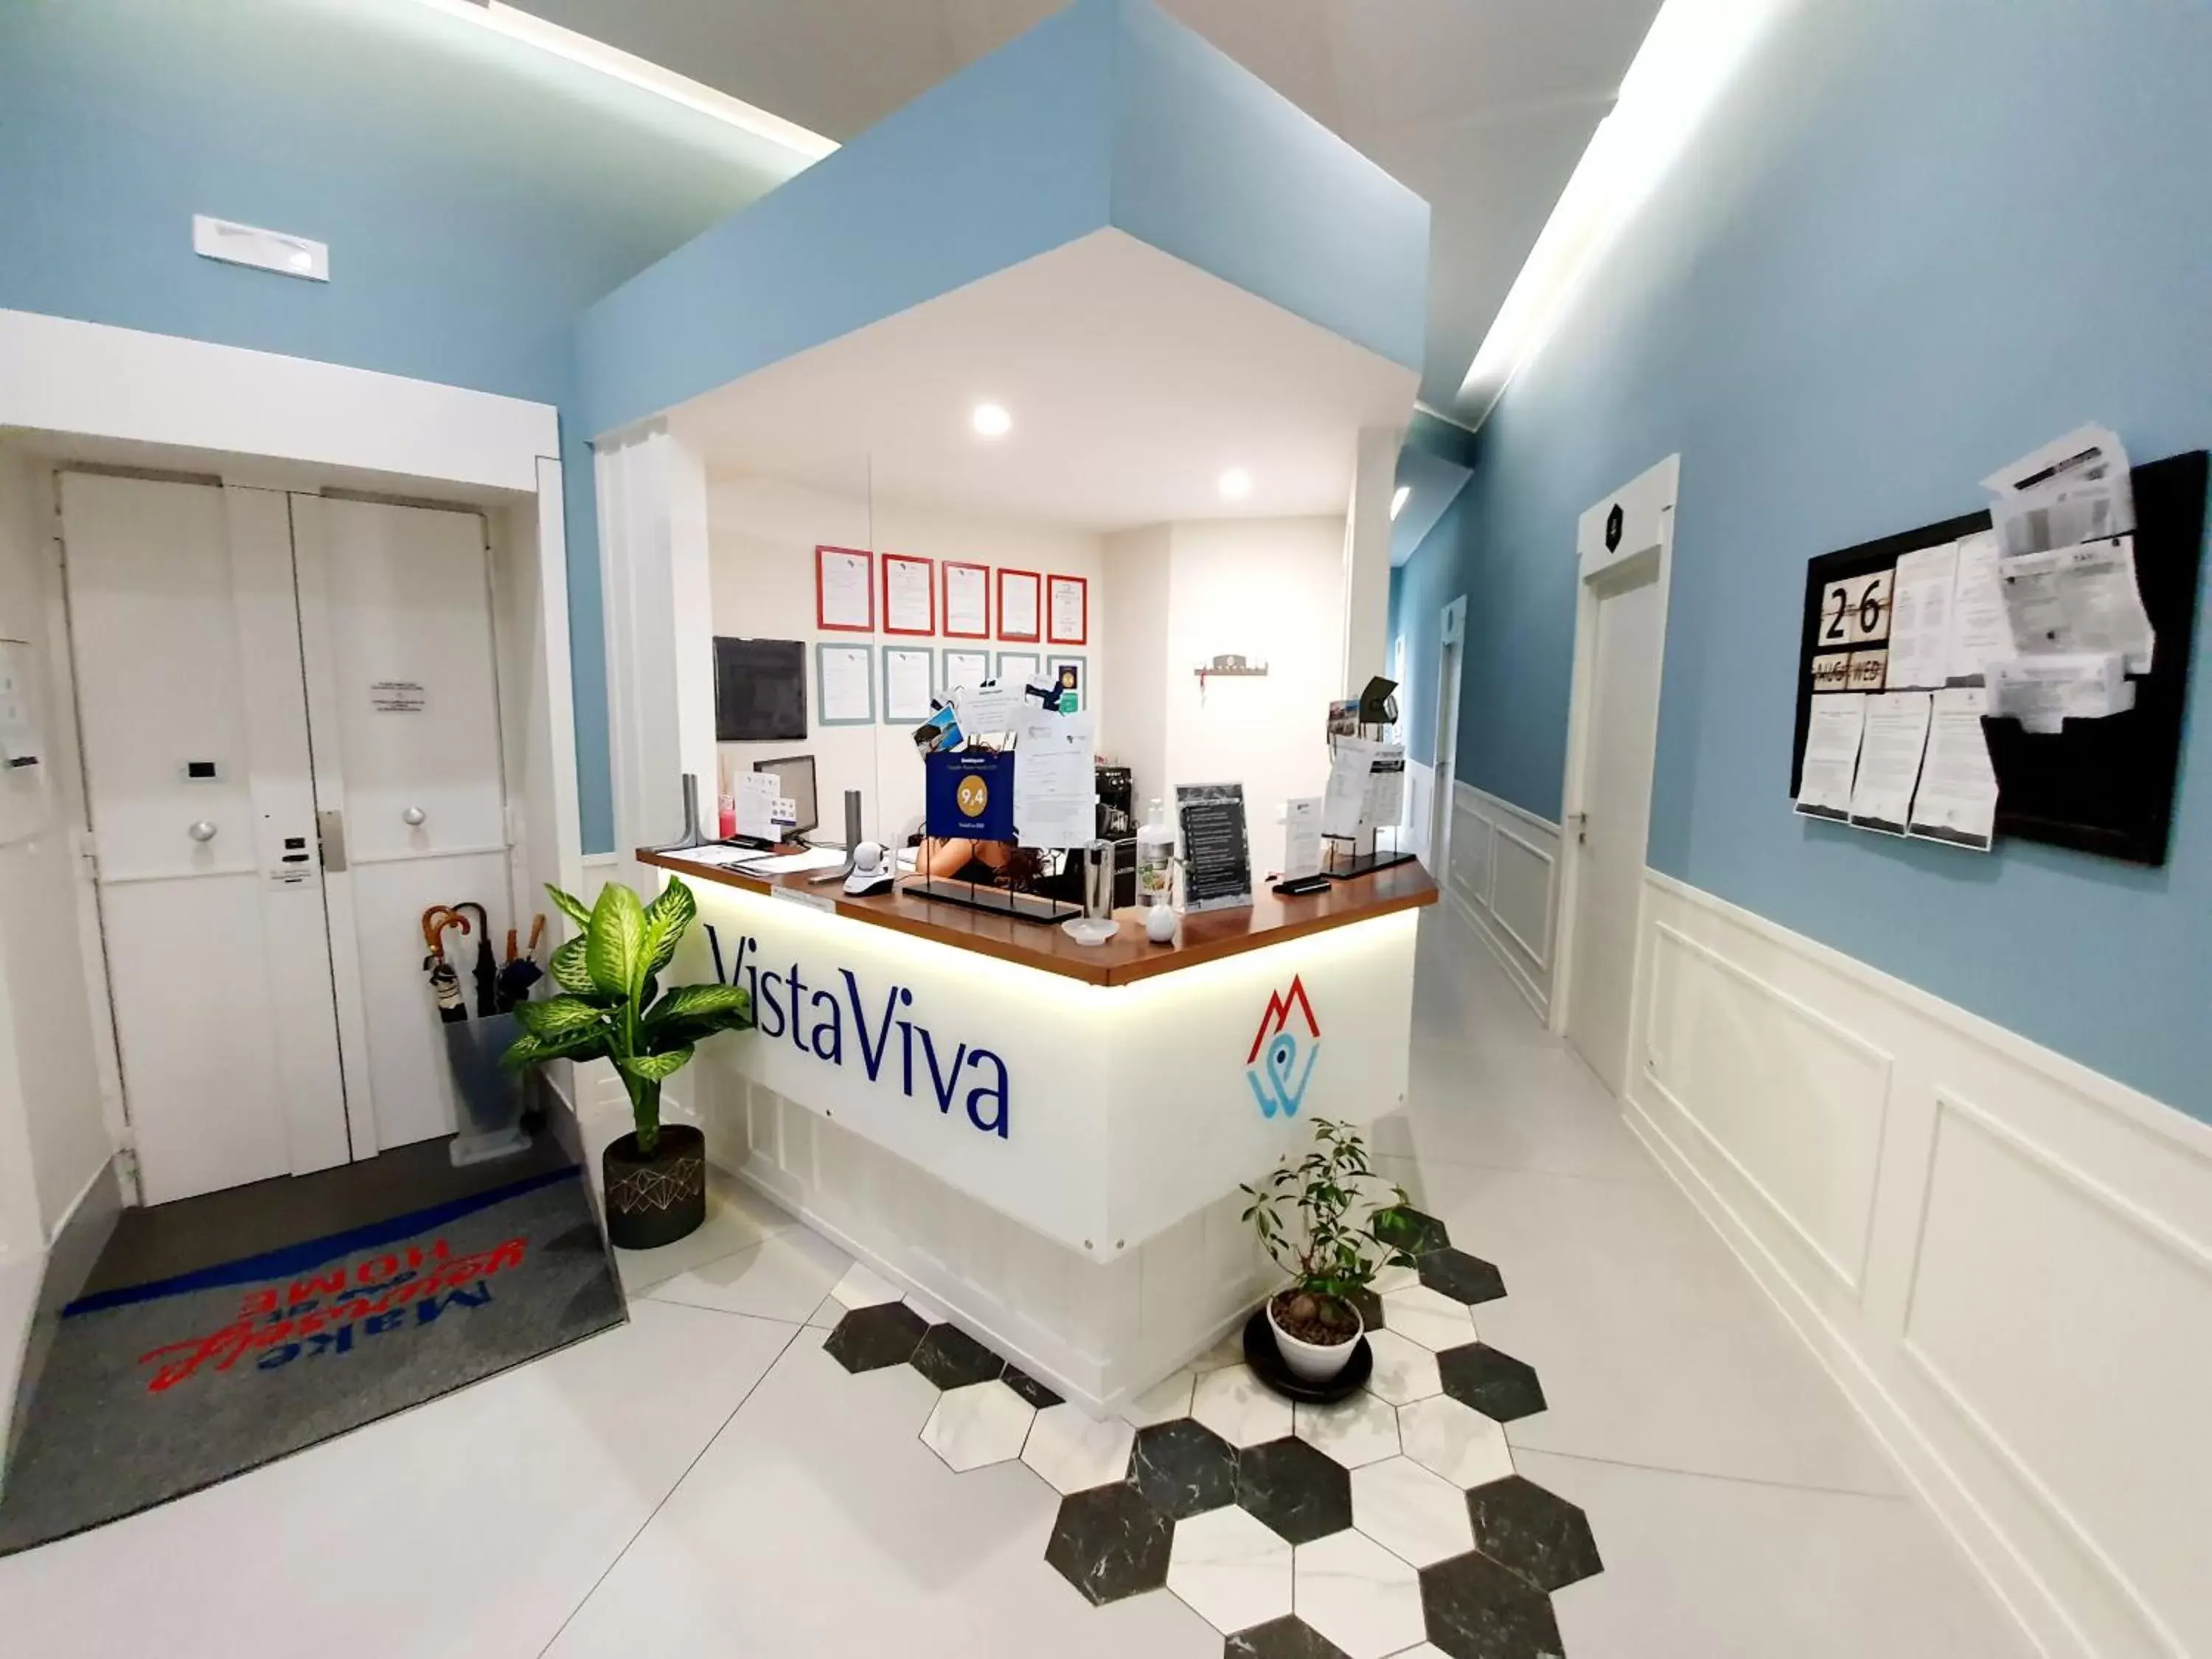 Lobby or reception in VistaViva B&B